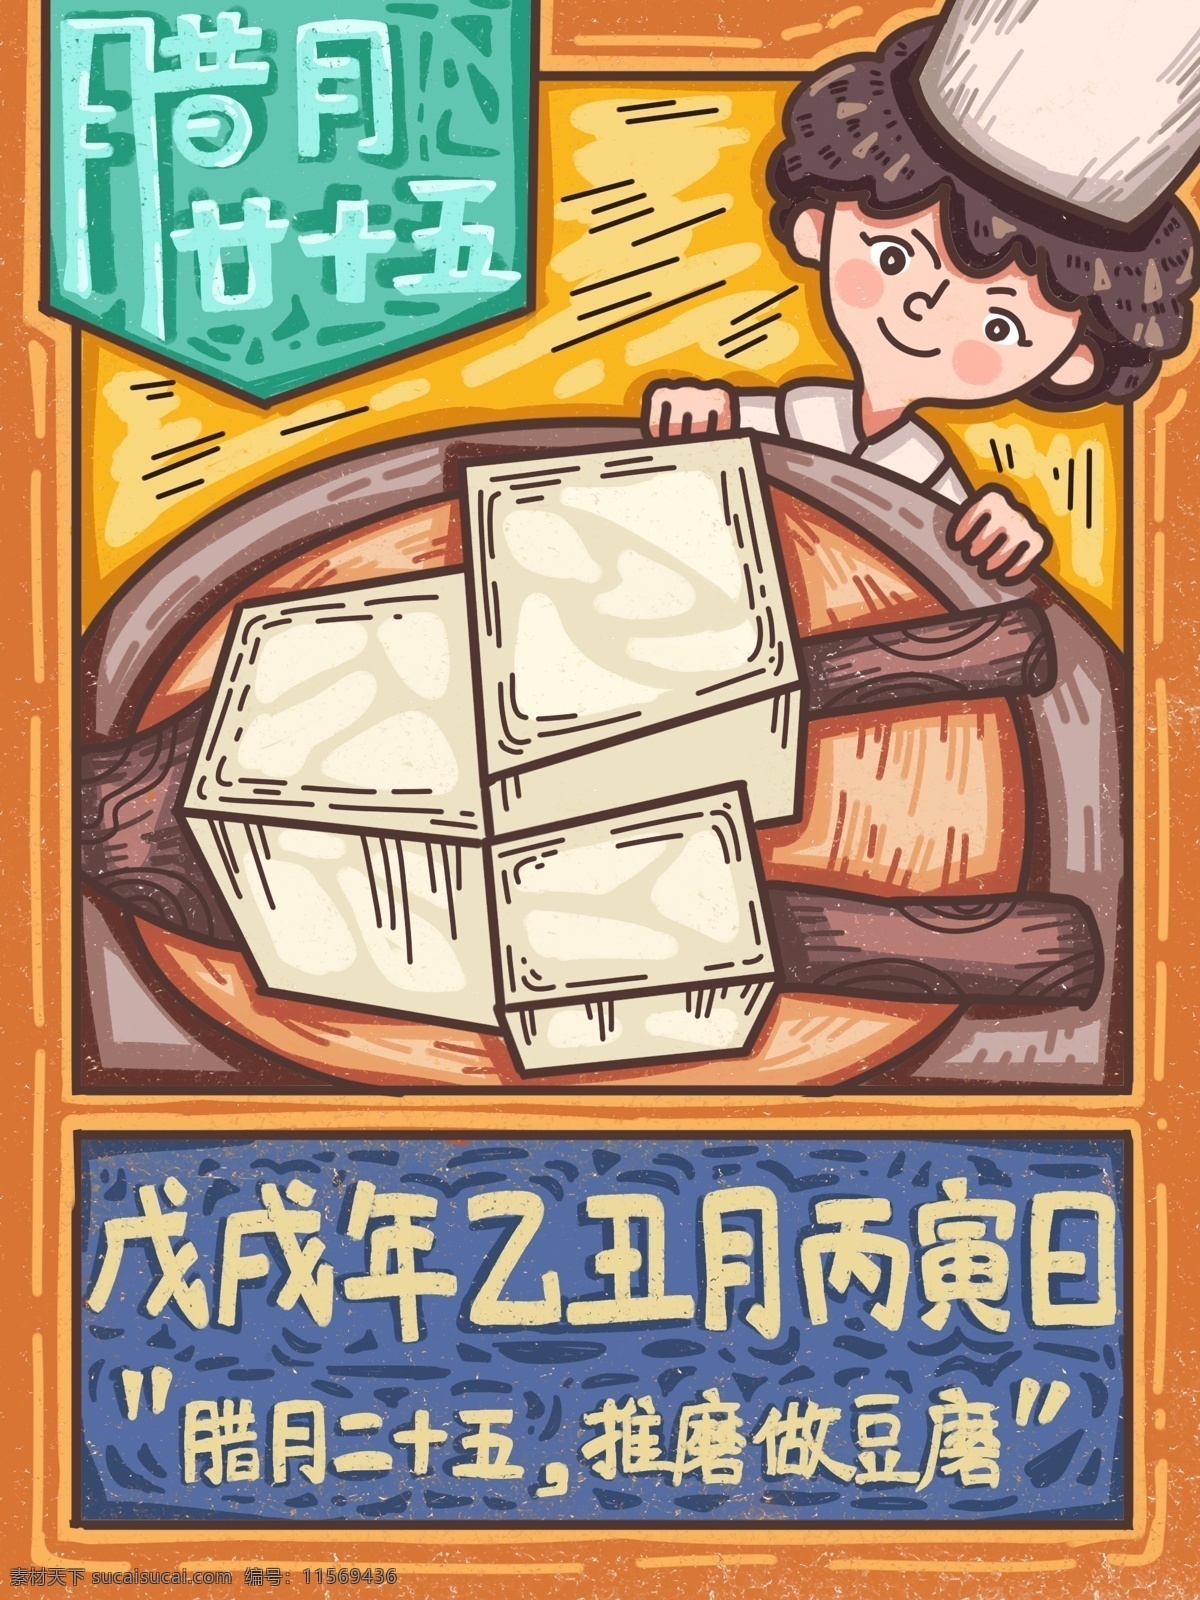 腊月 二 十 五 做 豆腐 节日 新年 猪年 描 风格 插画 线稿 插图 配图 原创 二十五 做豆腐 描边 手绘 年节